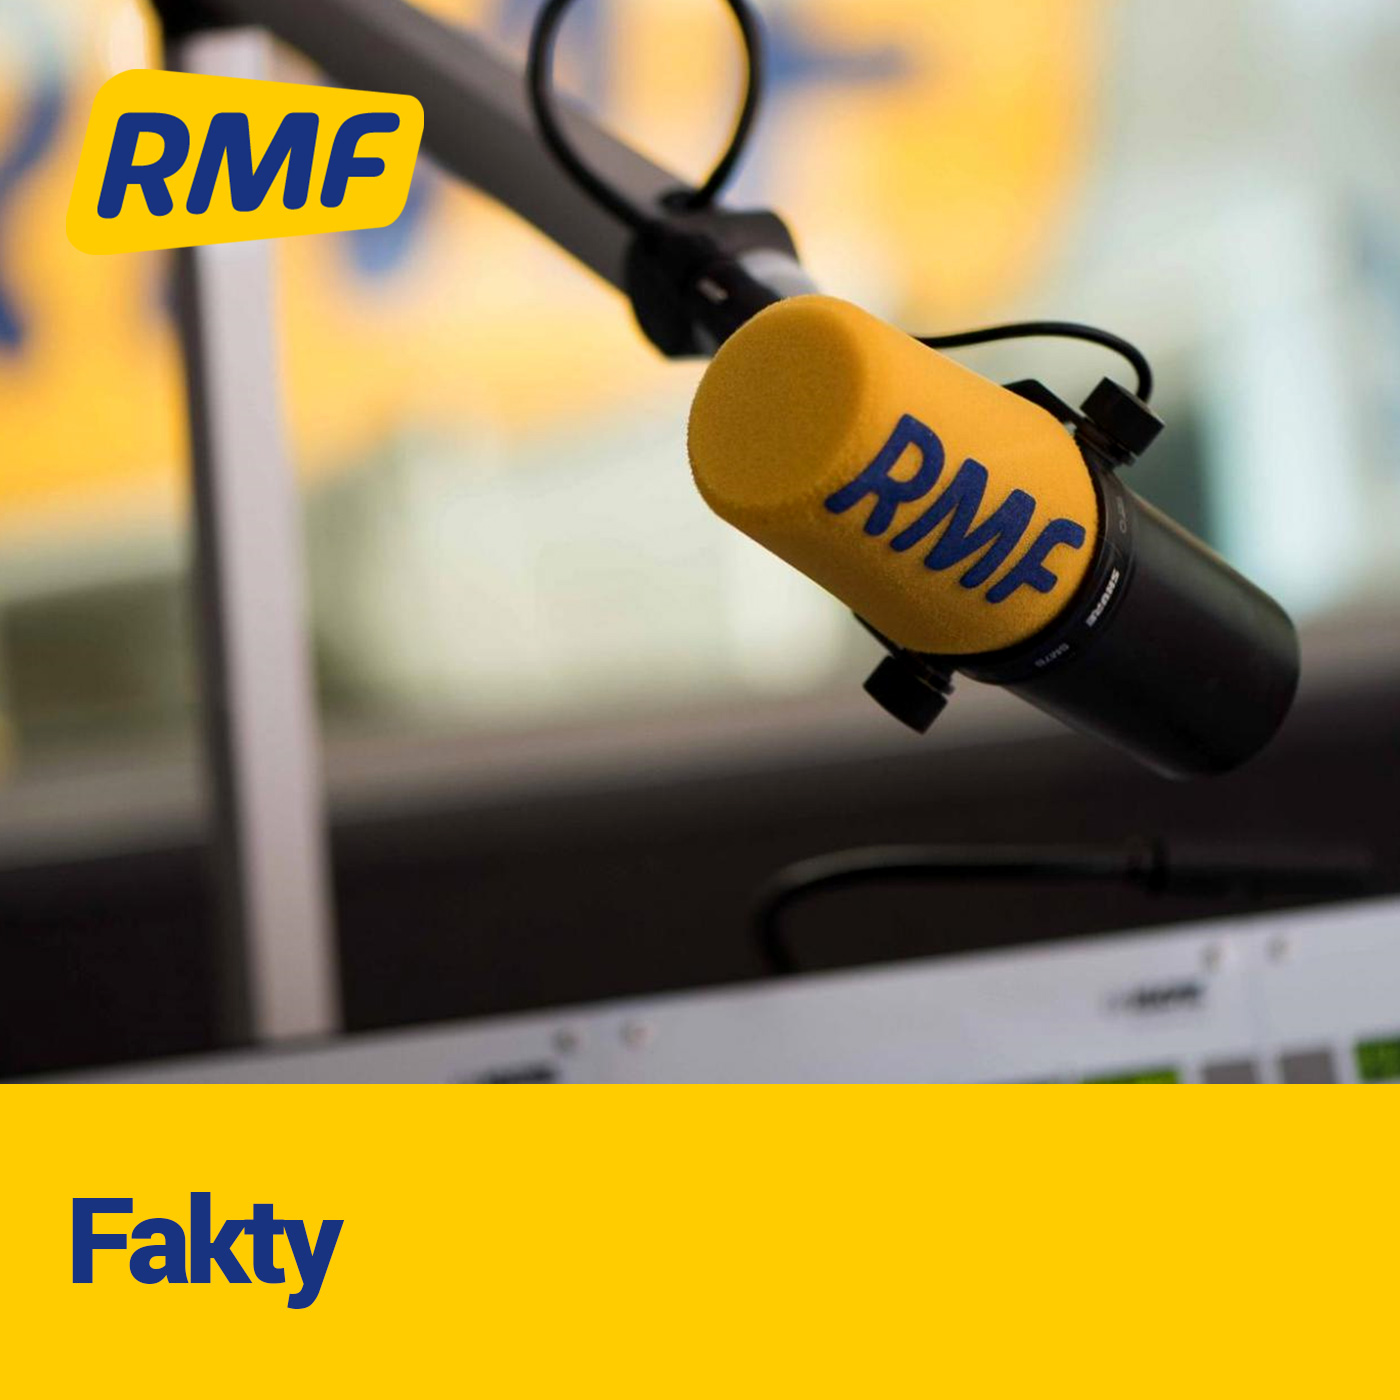 RMF24.pl - startuje nowe radio internetowe. Będzie prezentować informacje i  publicystykę